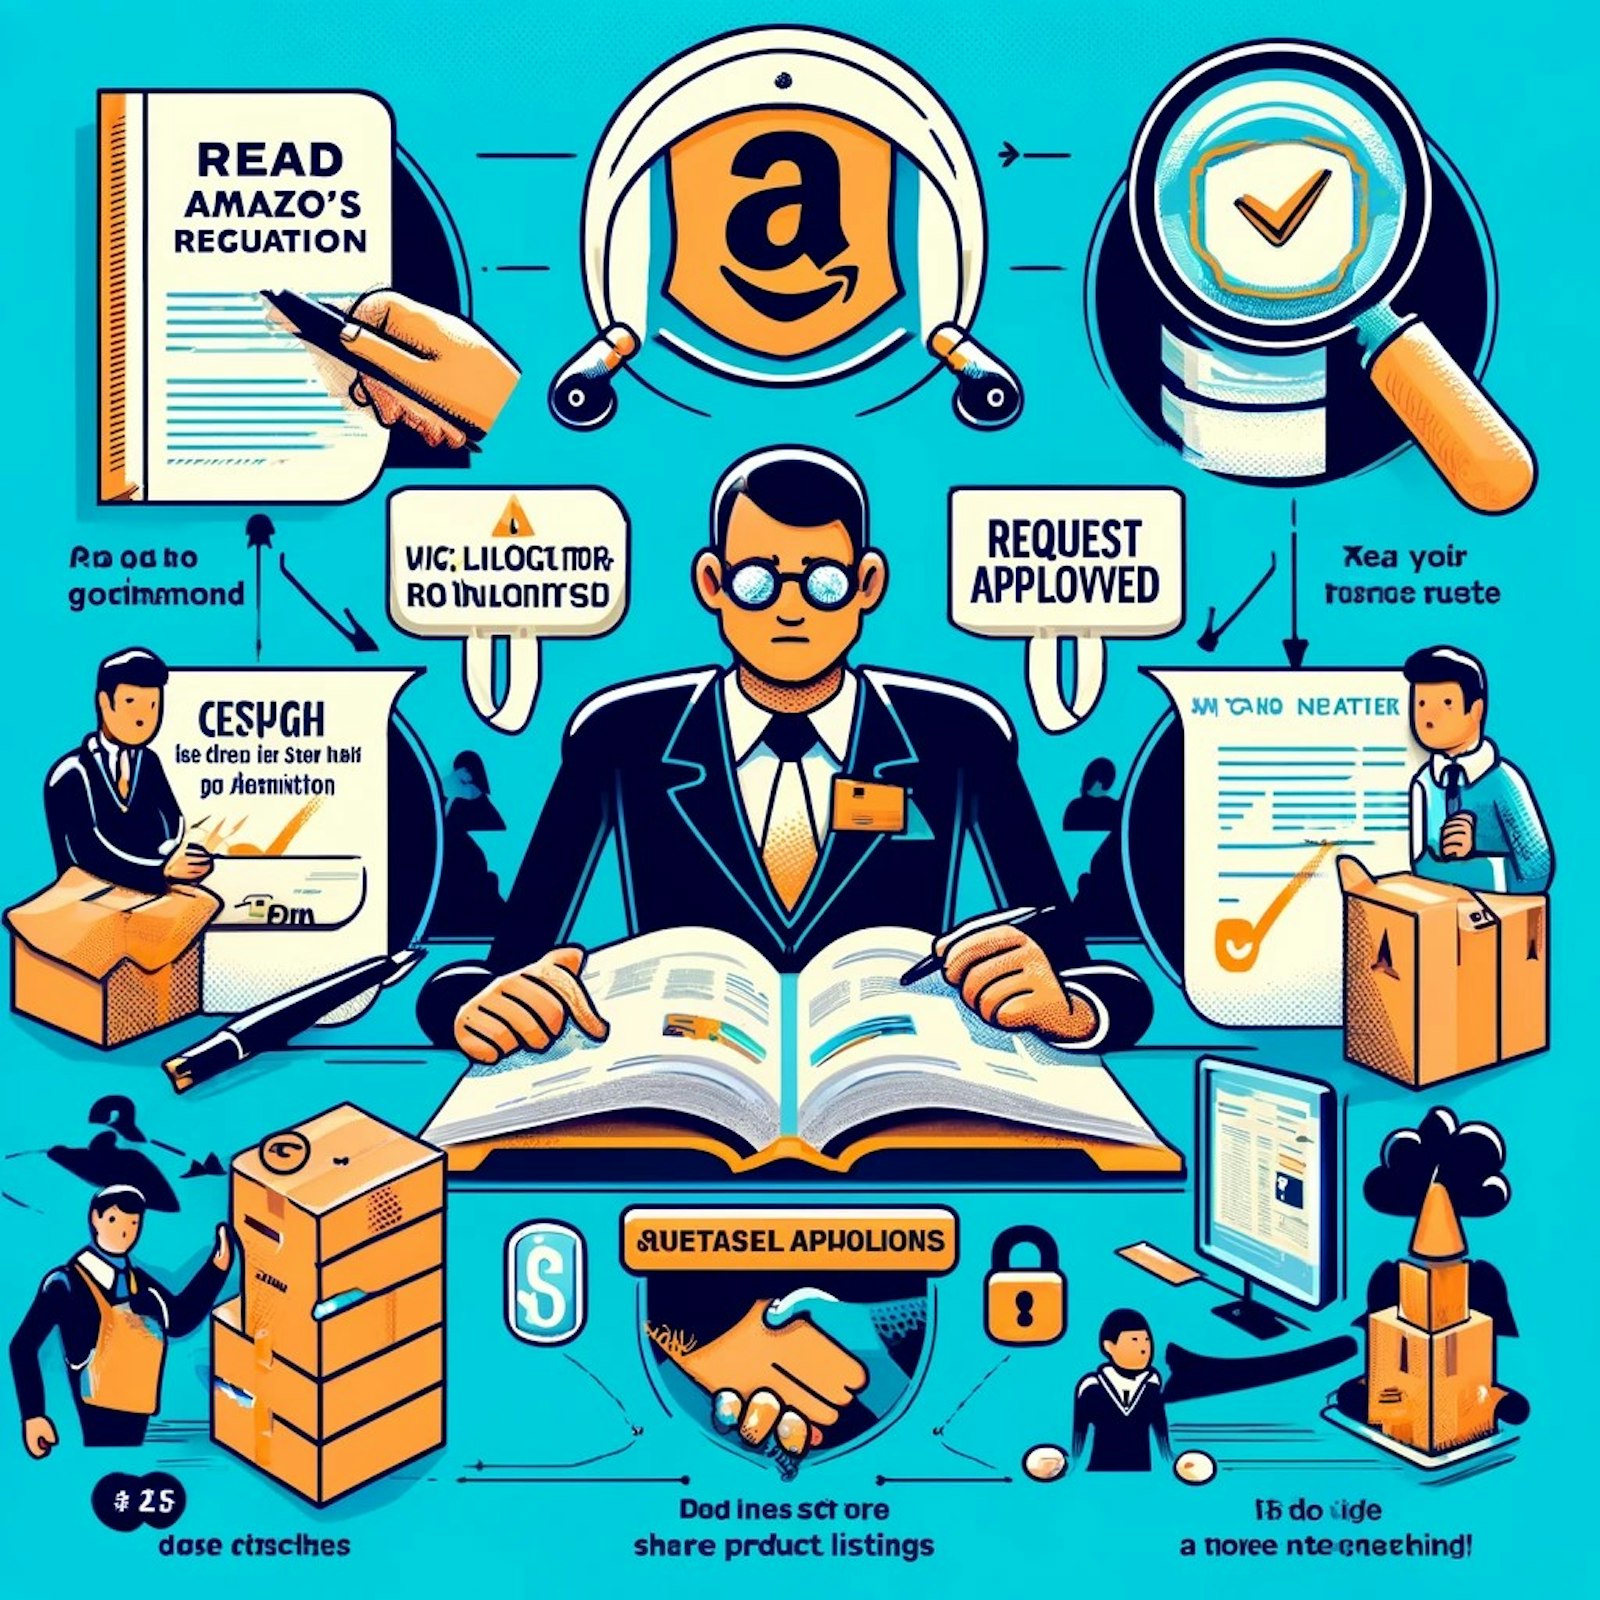 Schéma illustrant la création et la gestion de comptes vendeurs sur Amazon, incluant des étapes clés et des avertissements pour éviter les suspensions de compte.